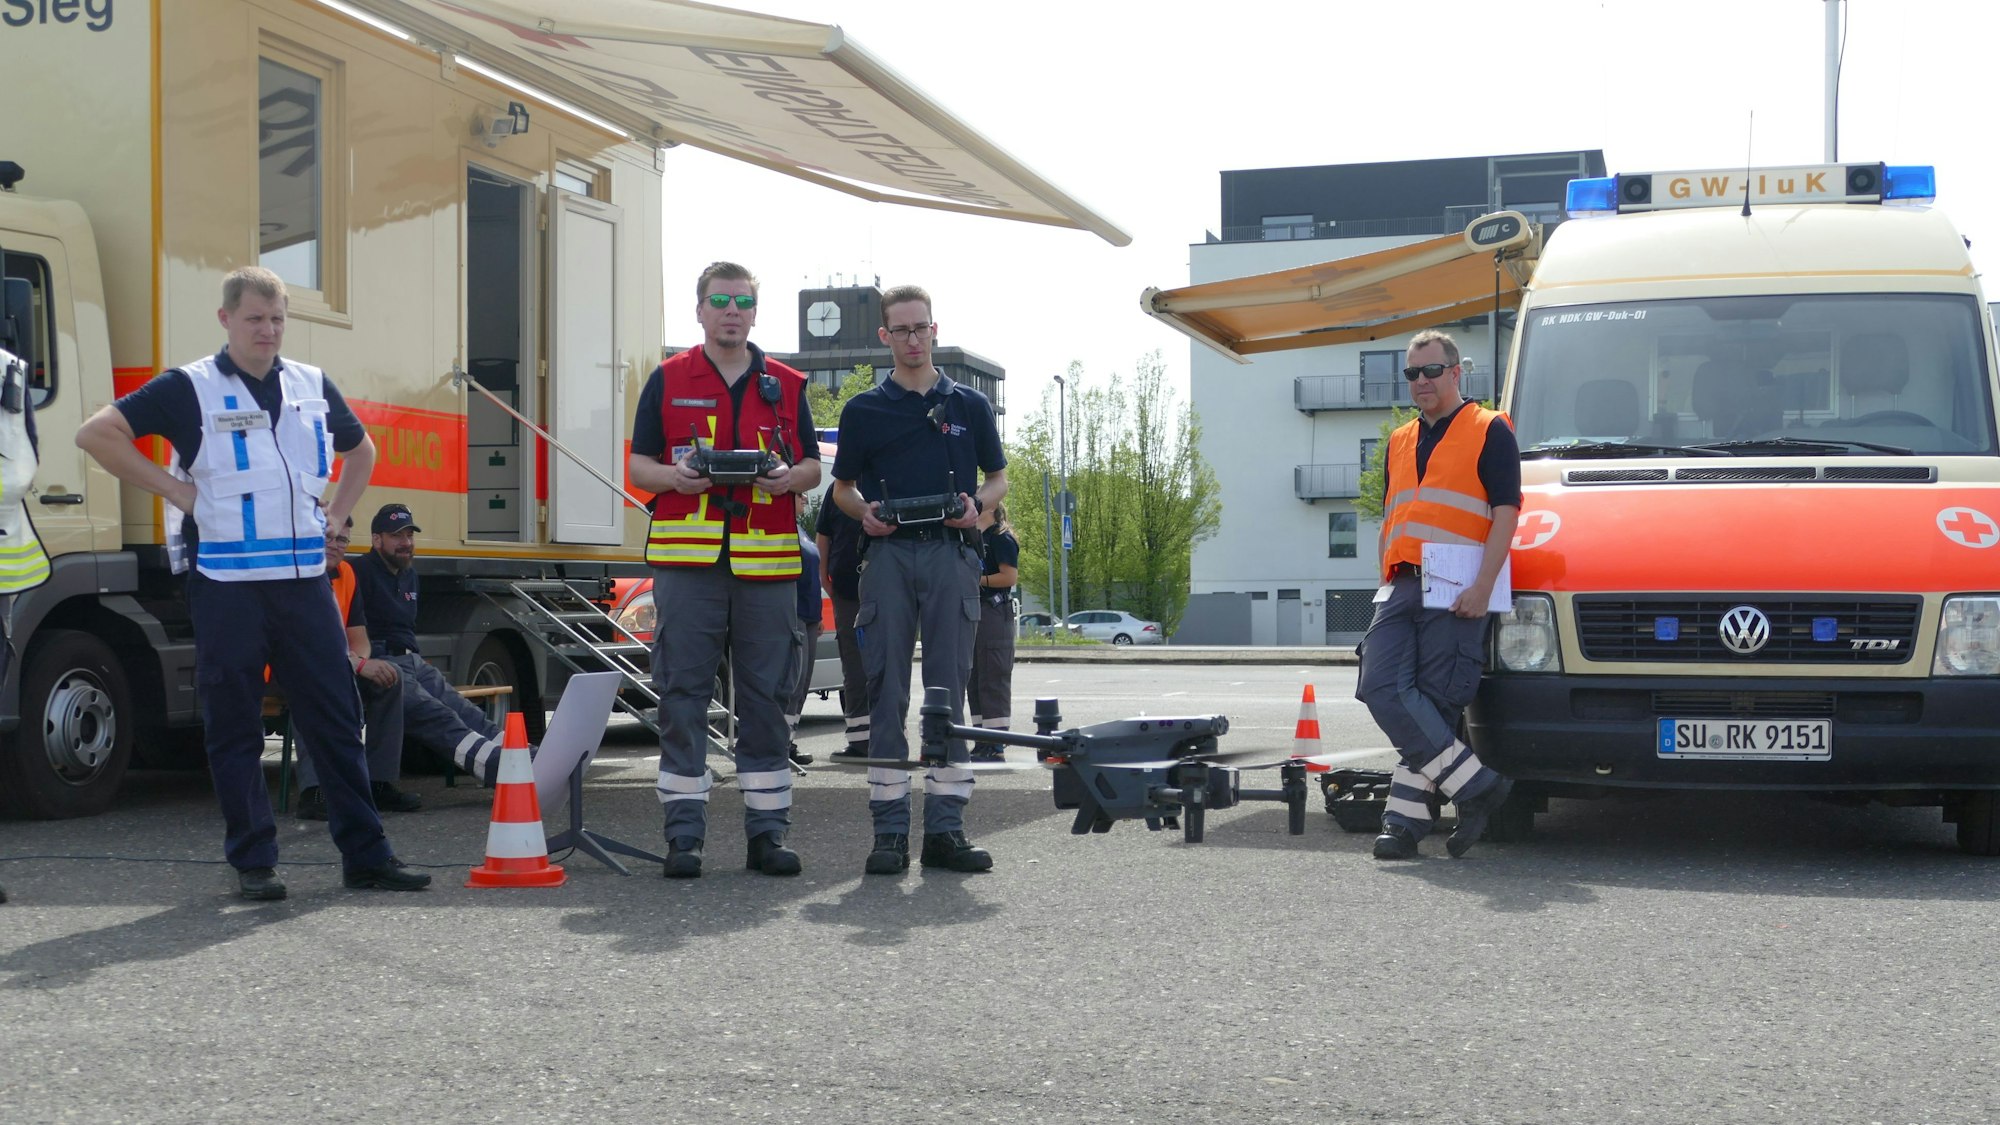 Mehrere Männer in Einsatzkleidung stehen vor einer Drohne, die einer von ihnen per Fernsteuerung bedient.